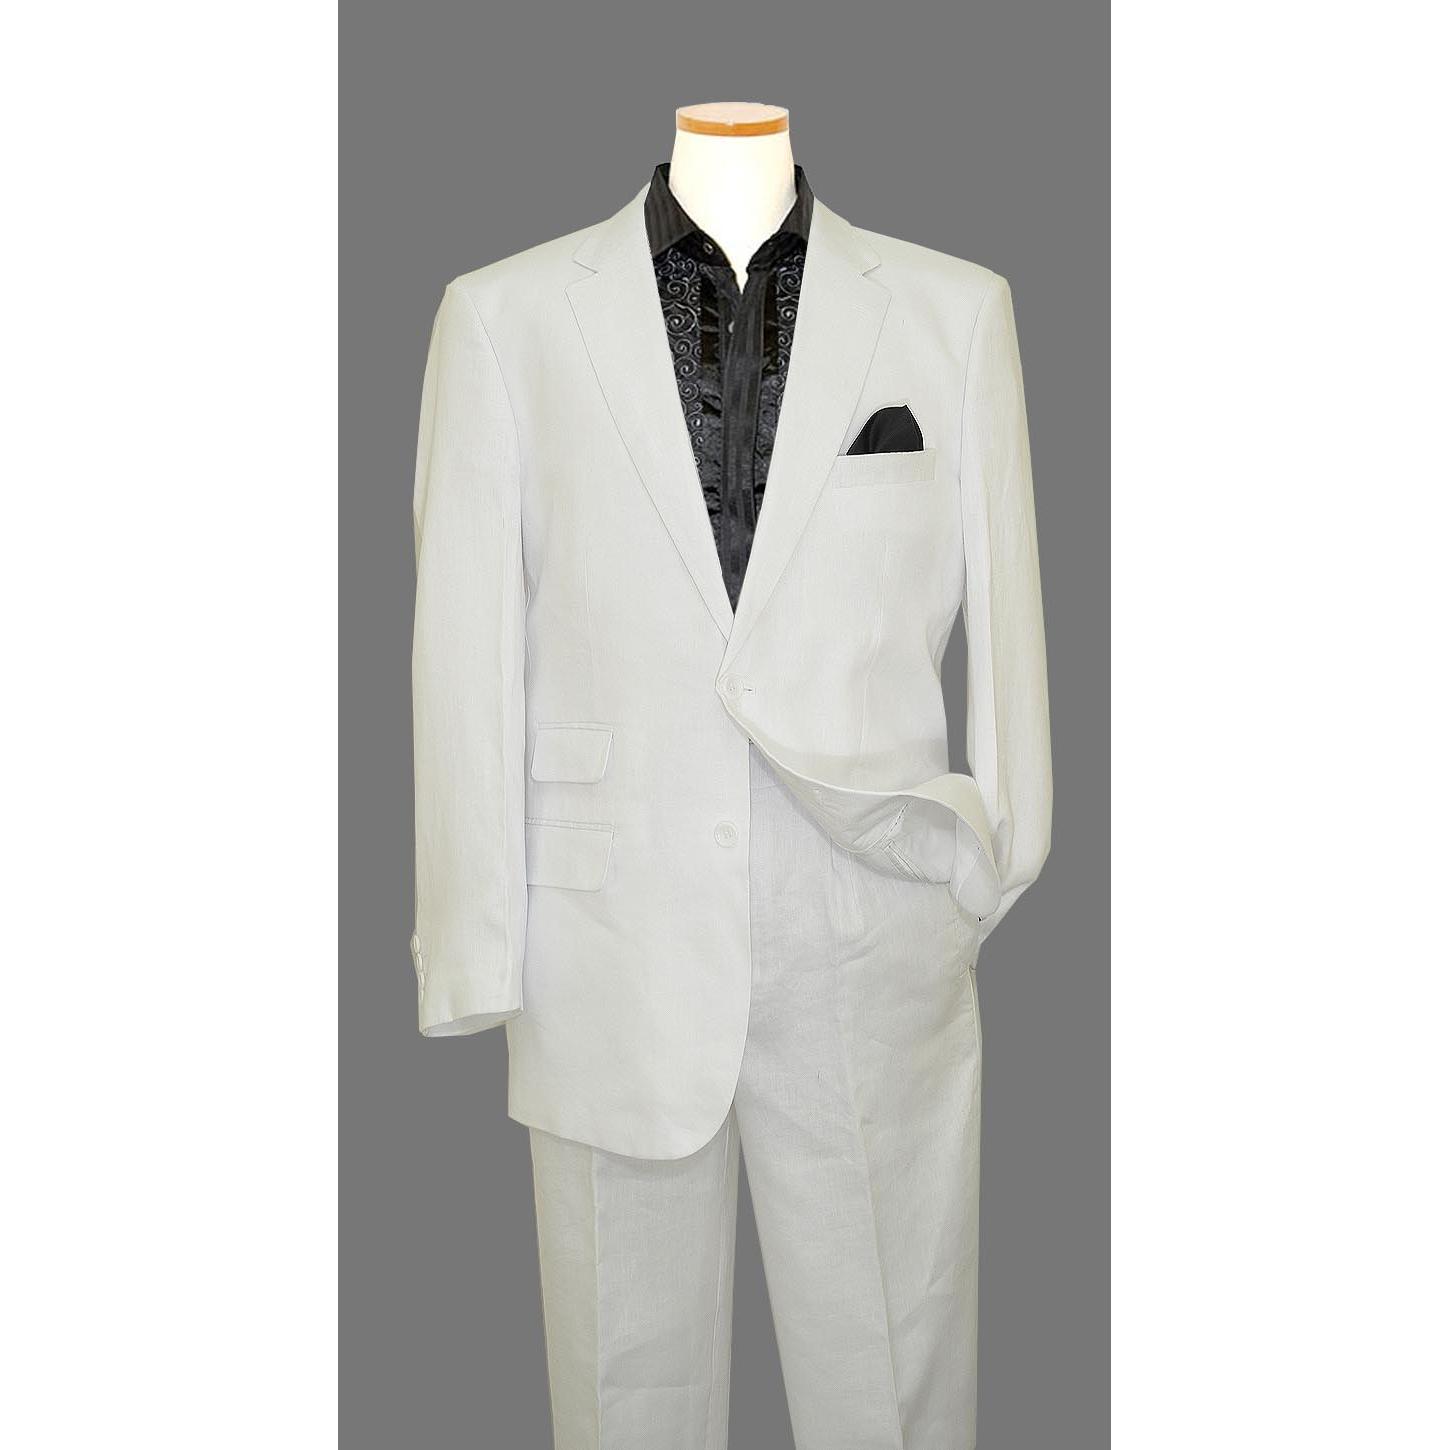 Bagazio White 100% Premium Linen Suit BM1531 - $99.90 :: Upscale ...